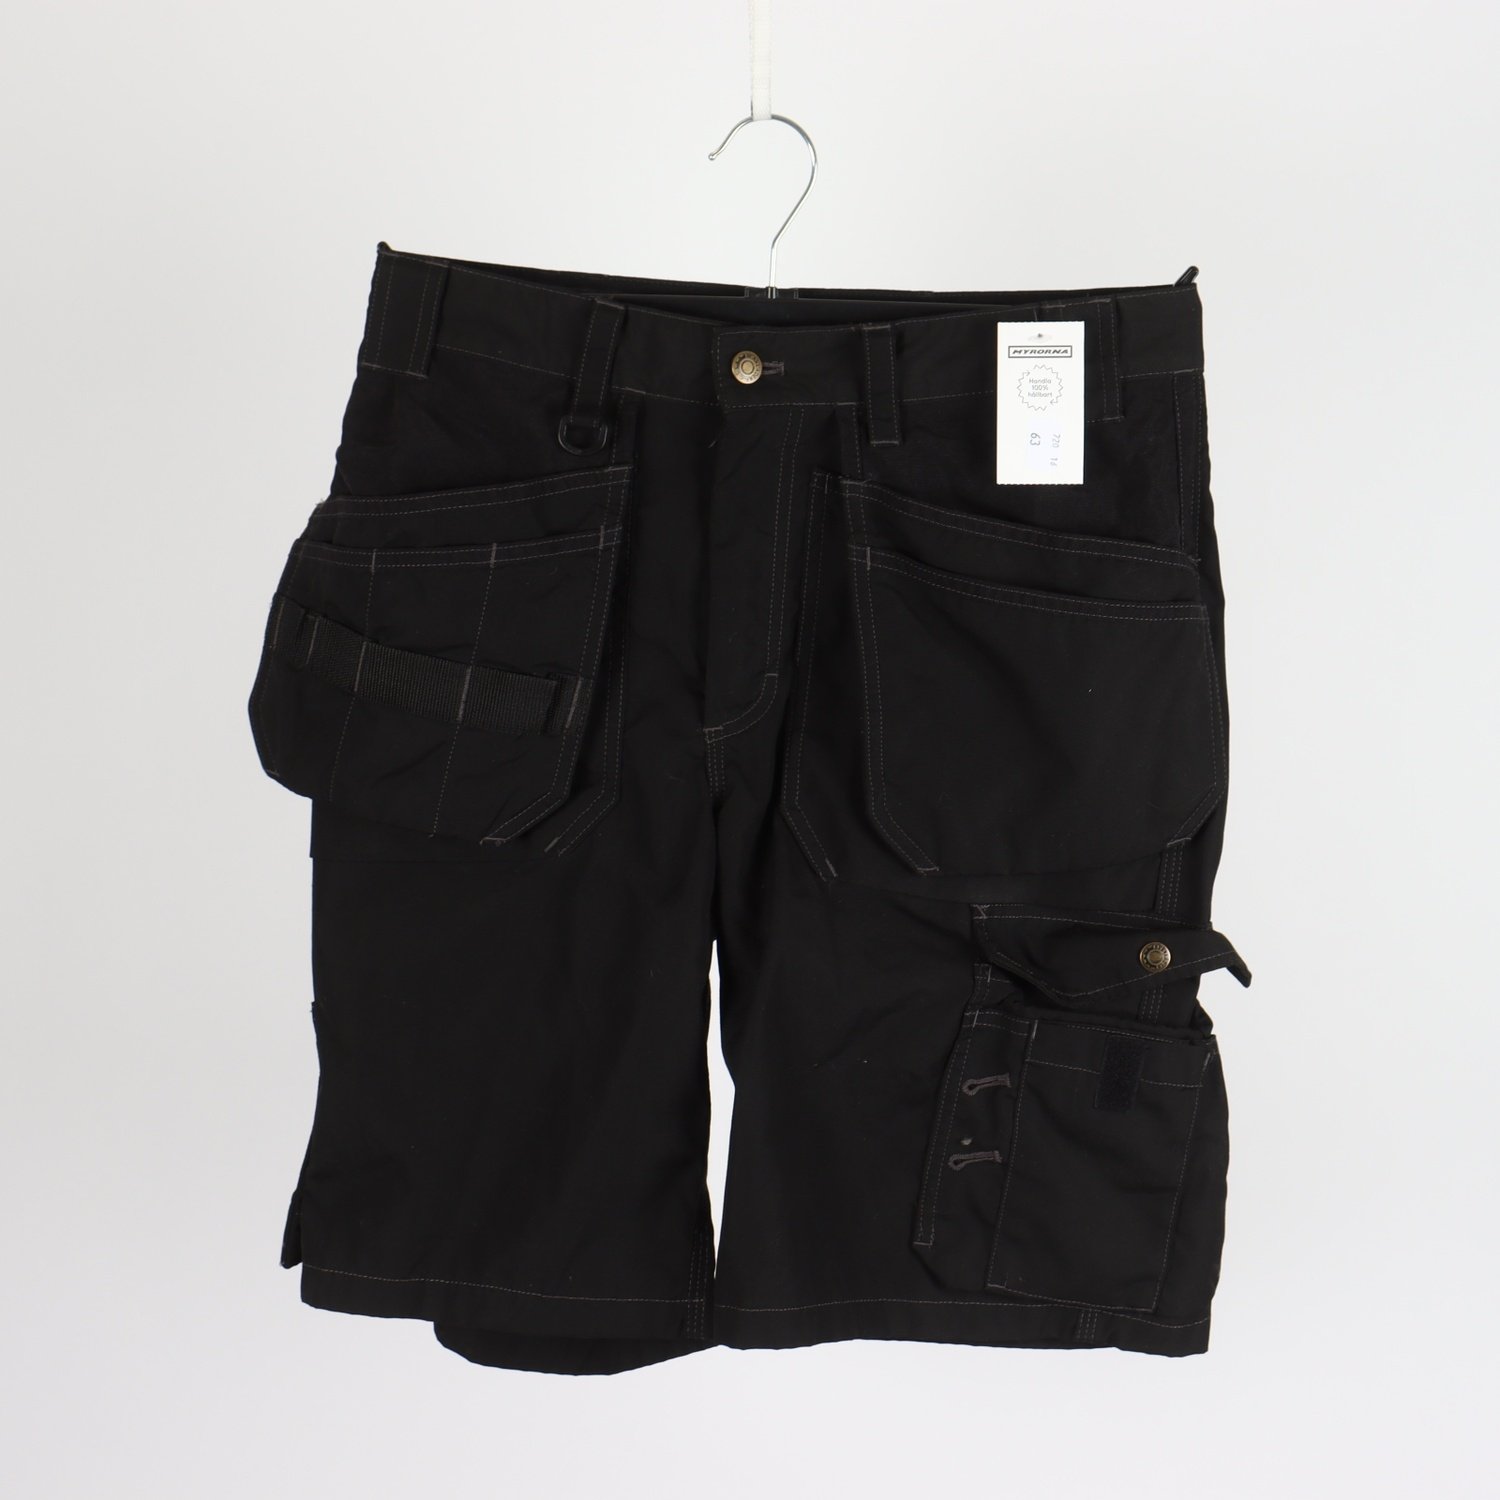 Shorts, Blåkläder, svart, stl. 46